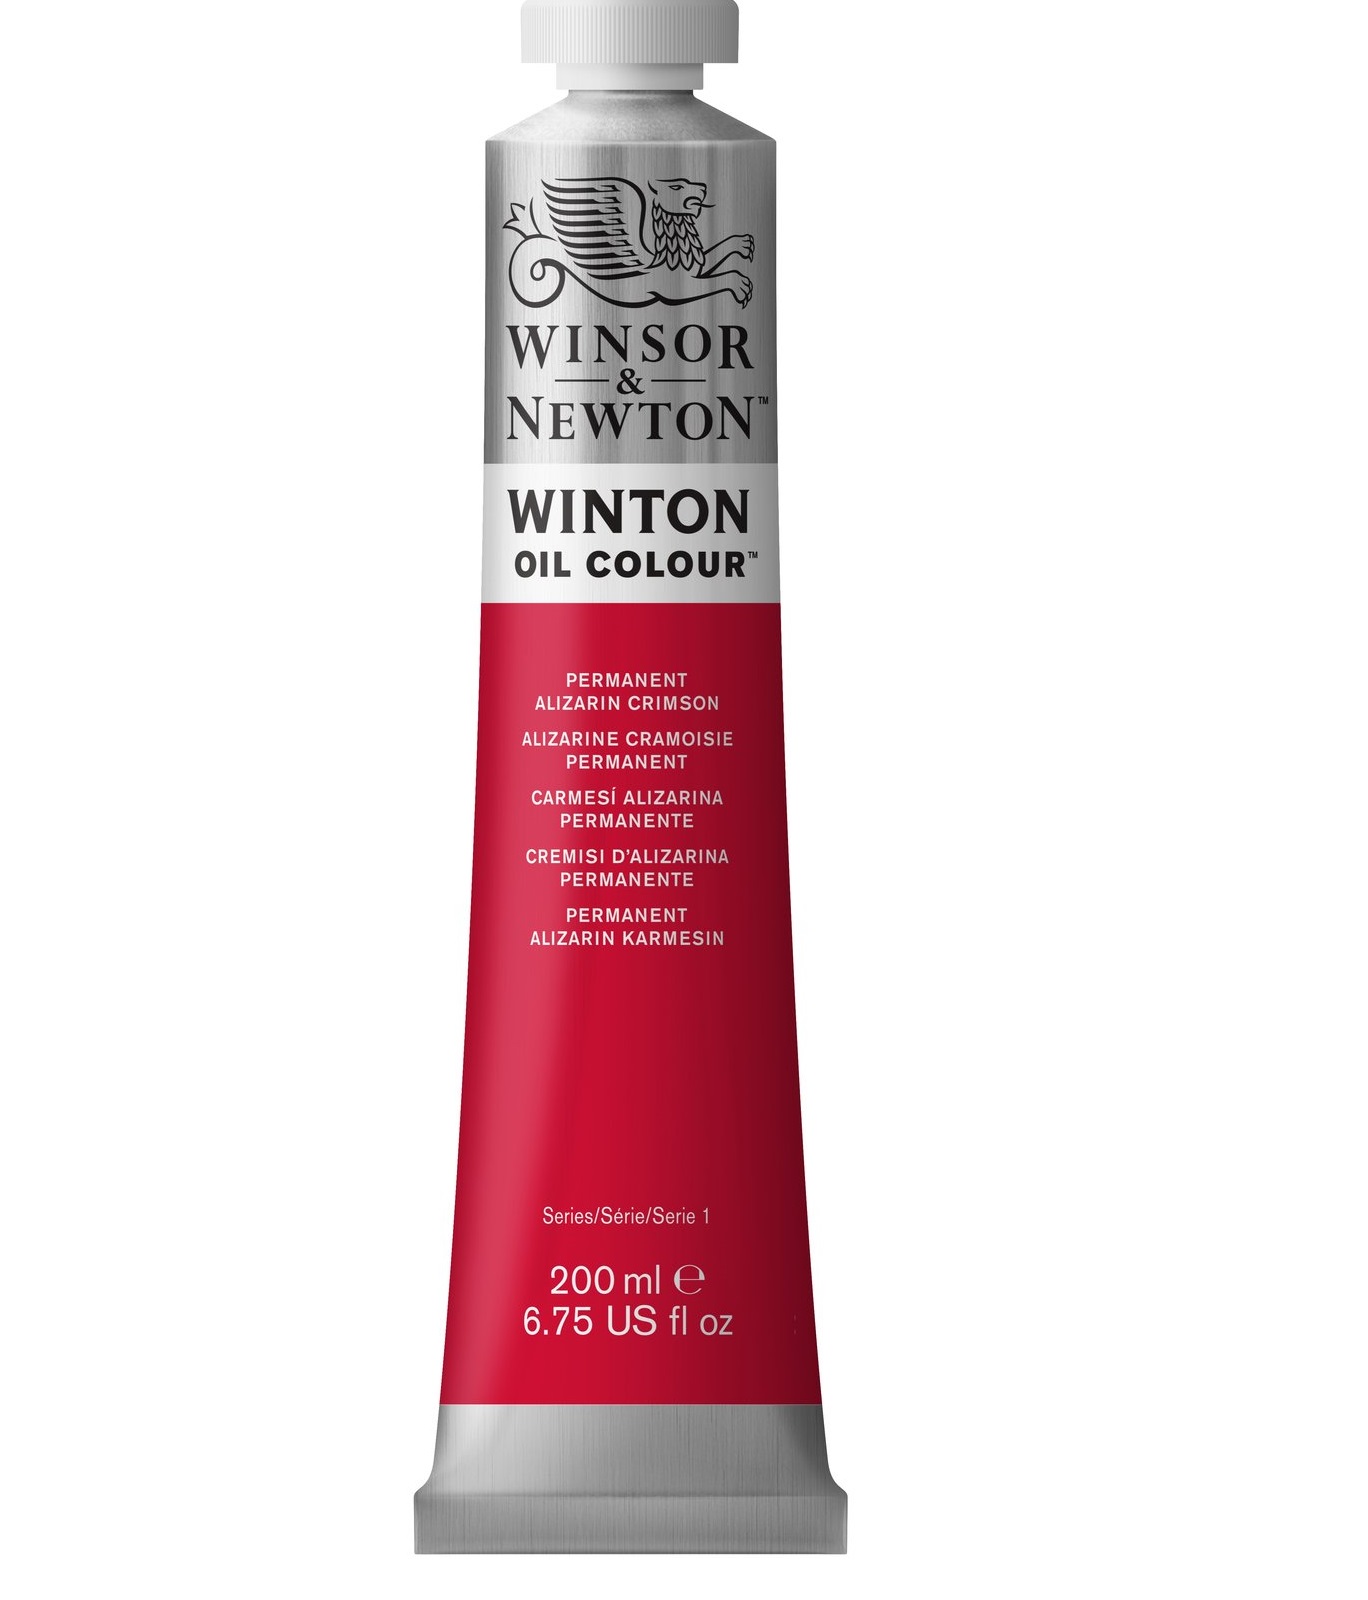 Winsor & Newton Winton oil colour Permanent Alizarin Crimson 200ml 